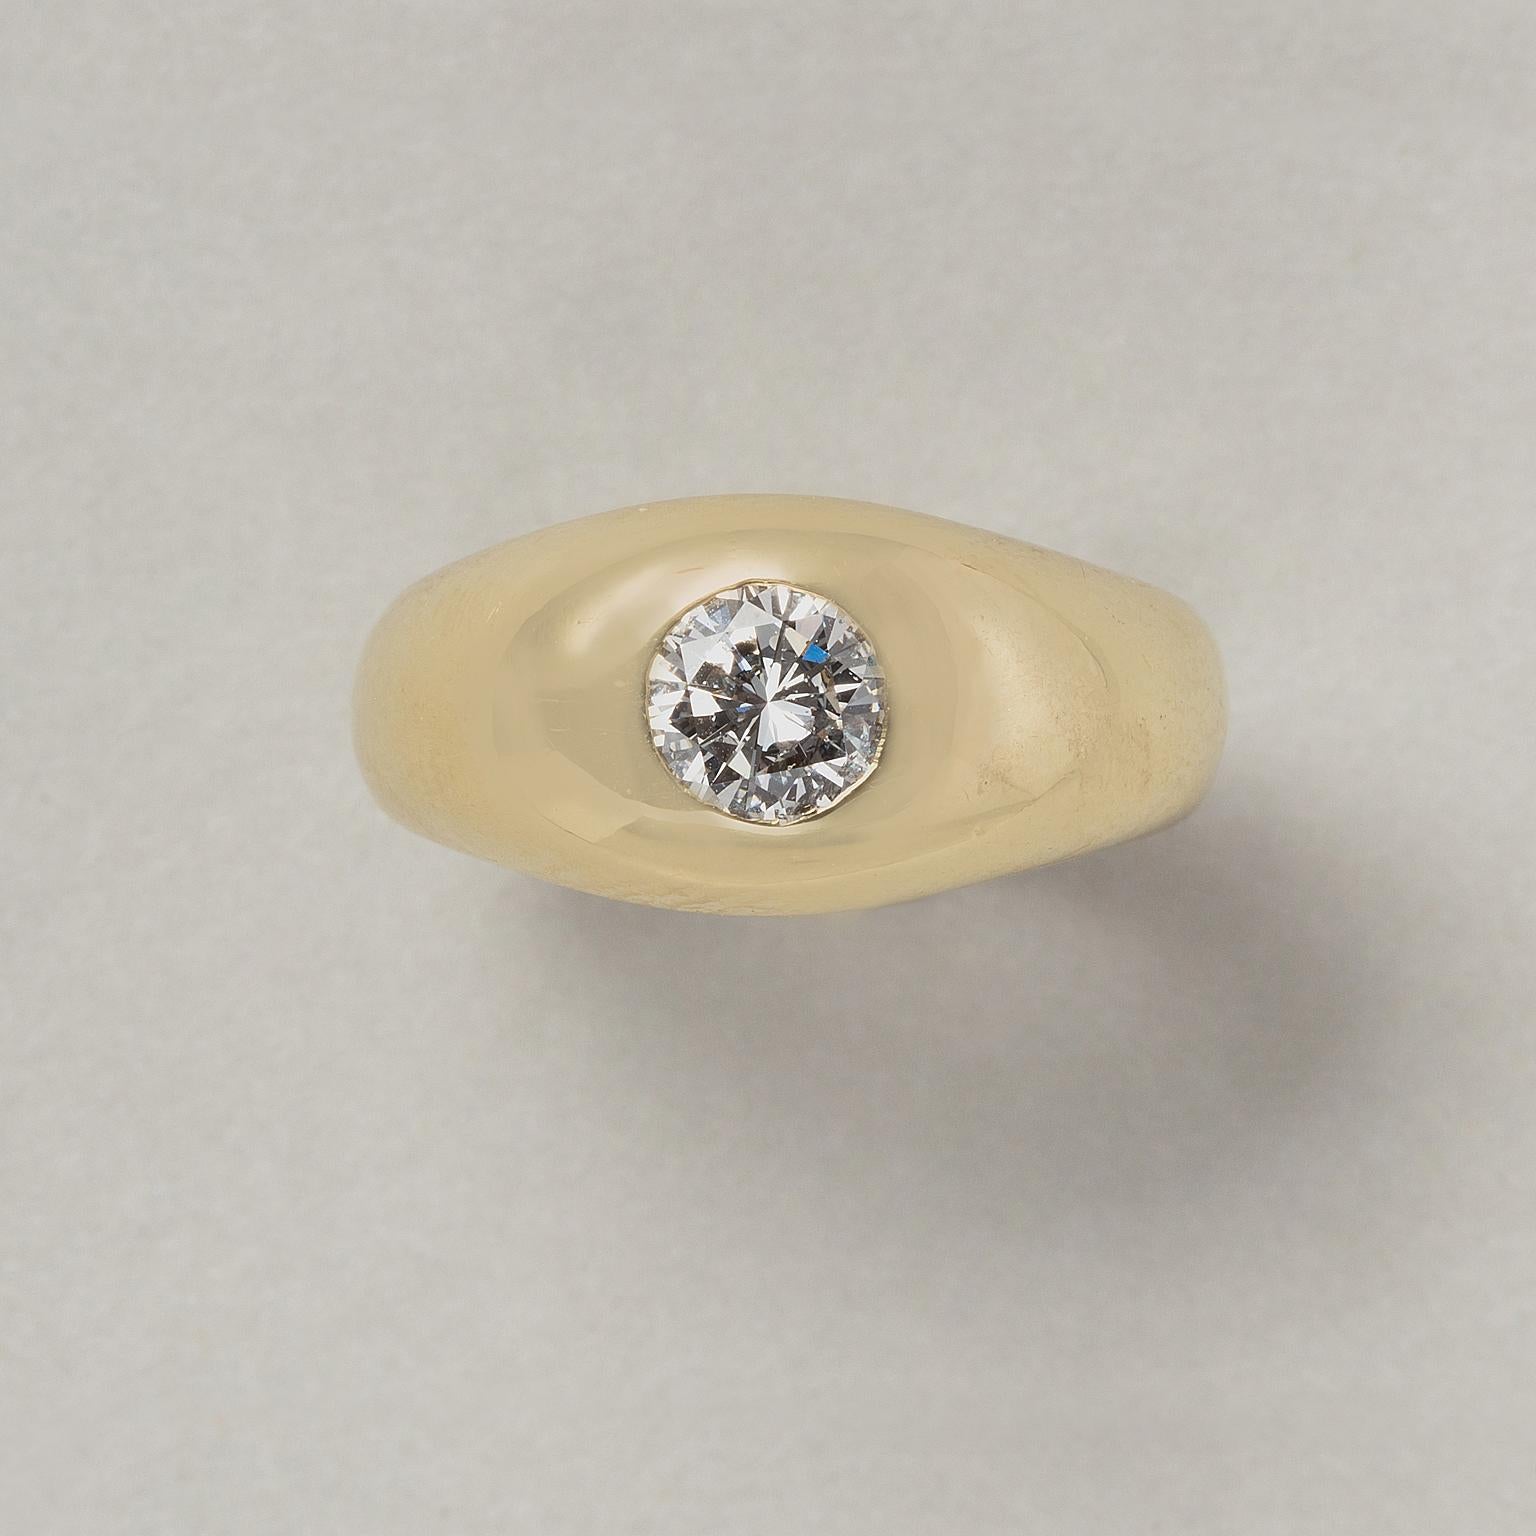 Ein Ring aus 14 Karat Gelbgold, bündig besetzt mit einem runden Diamanten im Brillantschliff (ca. 1,11 ct. D, PII).

Ringgröße: 18,5 mm / 8,5 US.
Gewicht: 11,8 Gramm